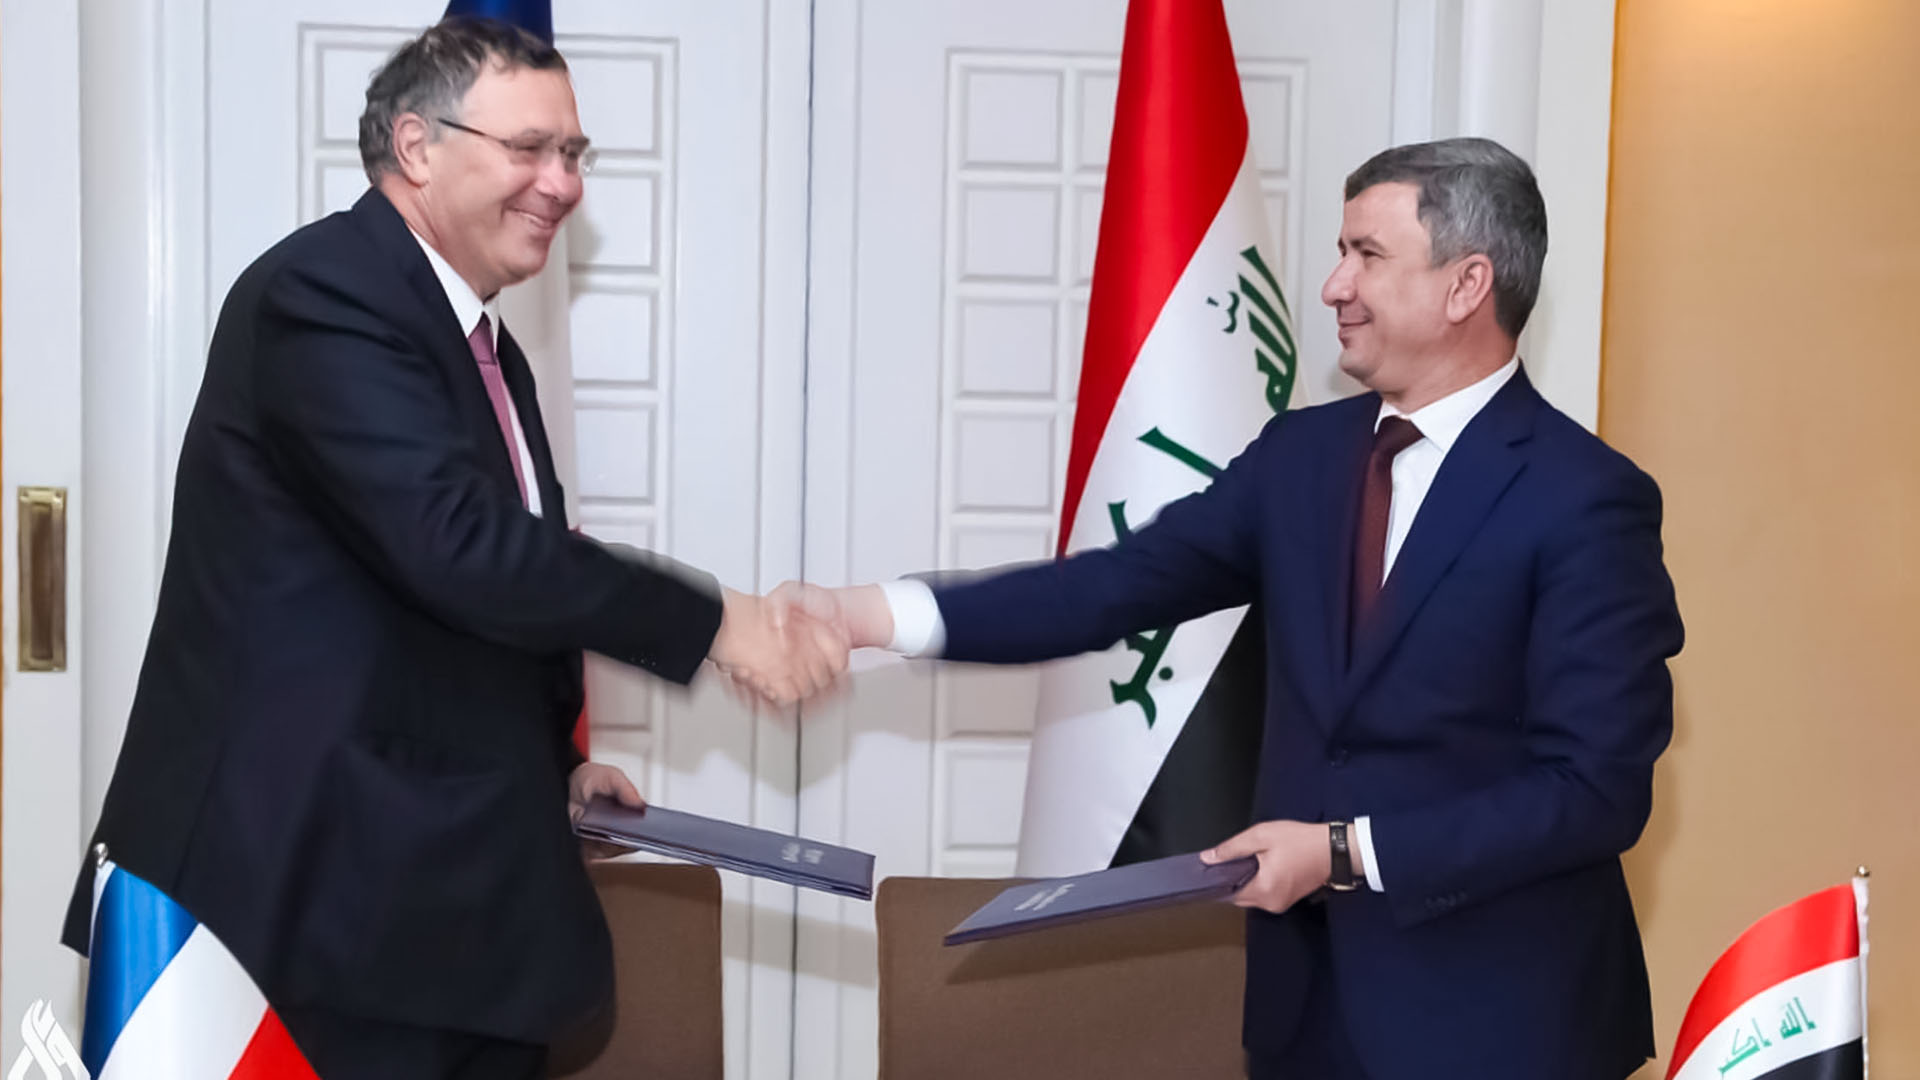 وزير النفط العراقي يبرم اتفاقاً مع رئيس شركة توتال على توقيتات تنفيذ خمسة مشاريع news